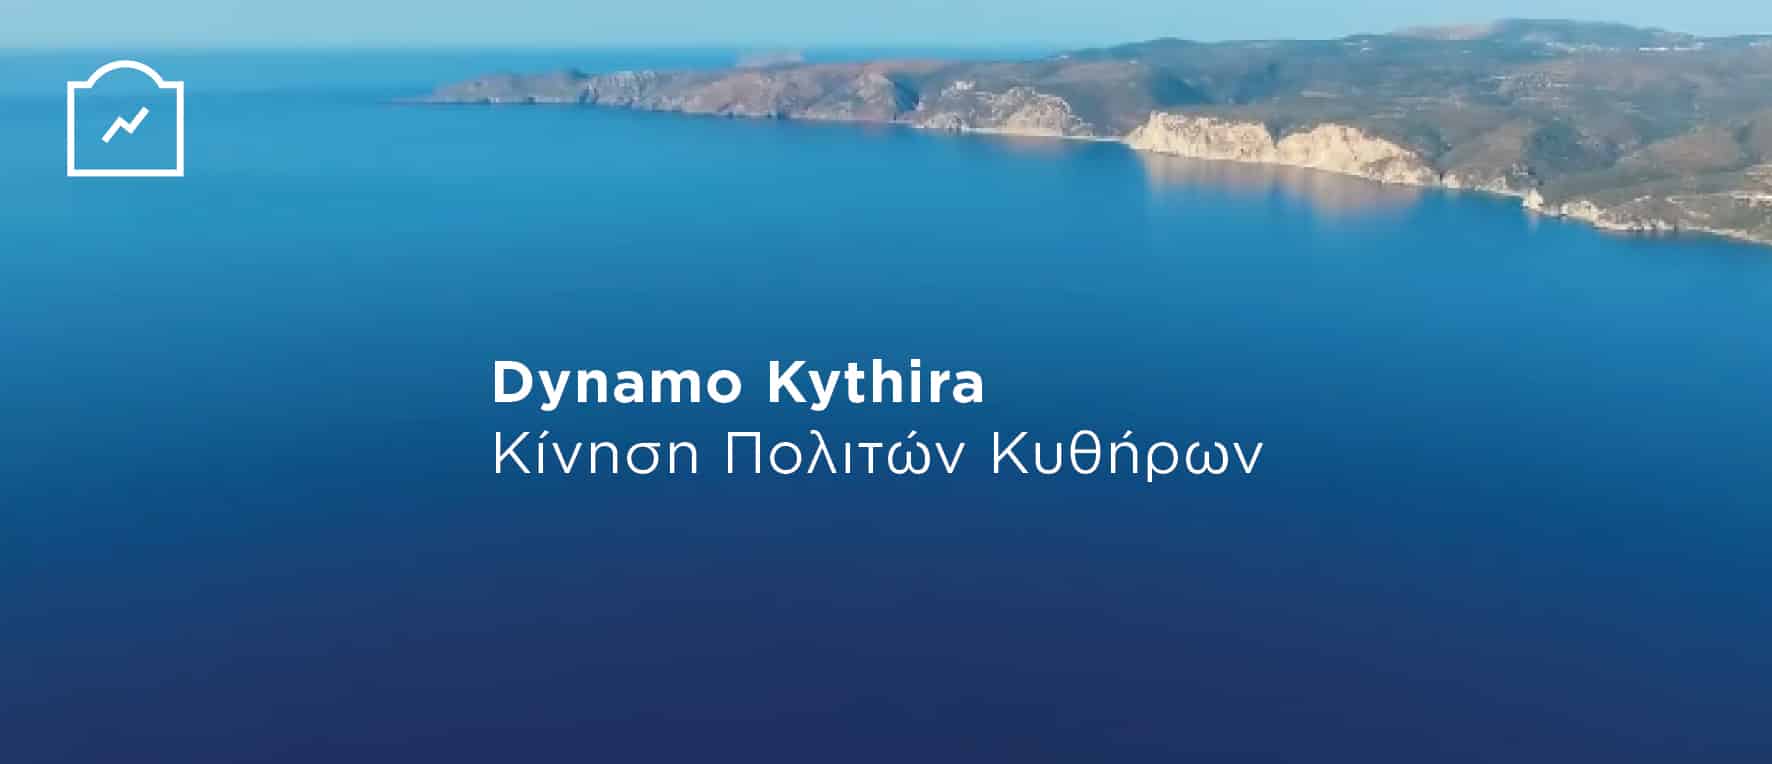 dynamo-kythira